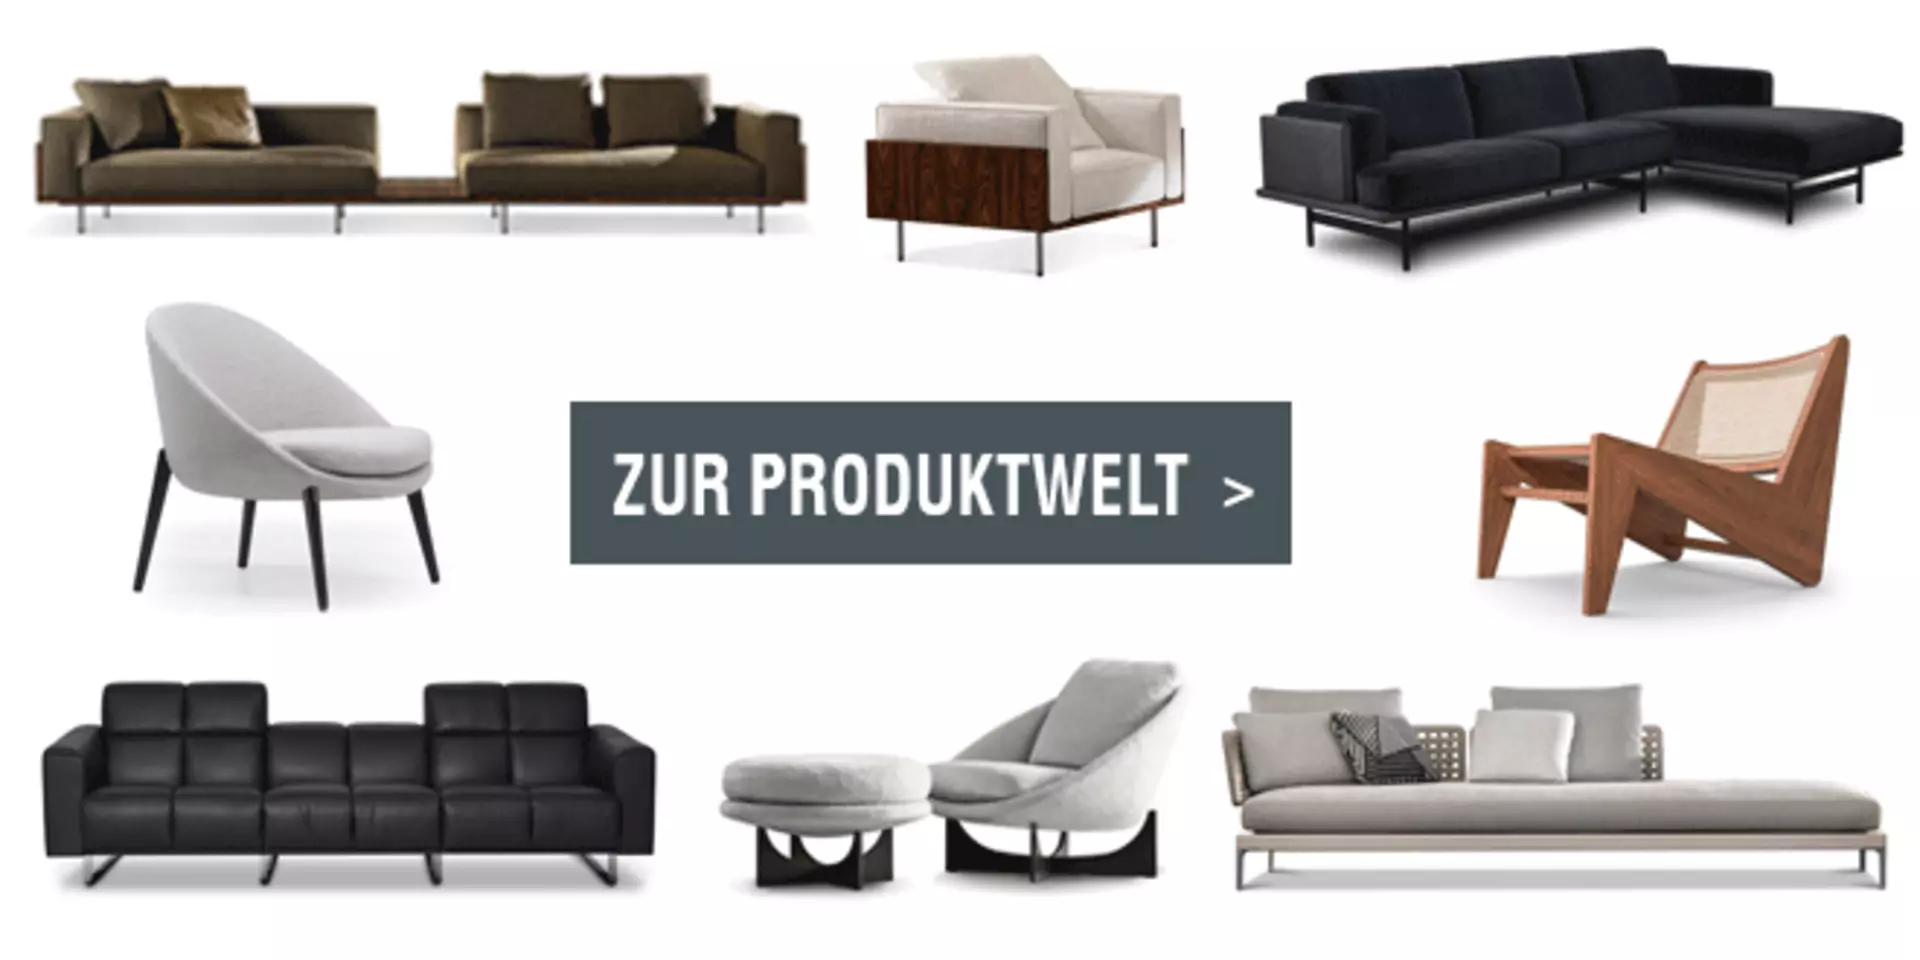 Linkbild zur Produktwelt Sofa & Sessel